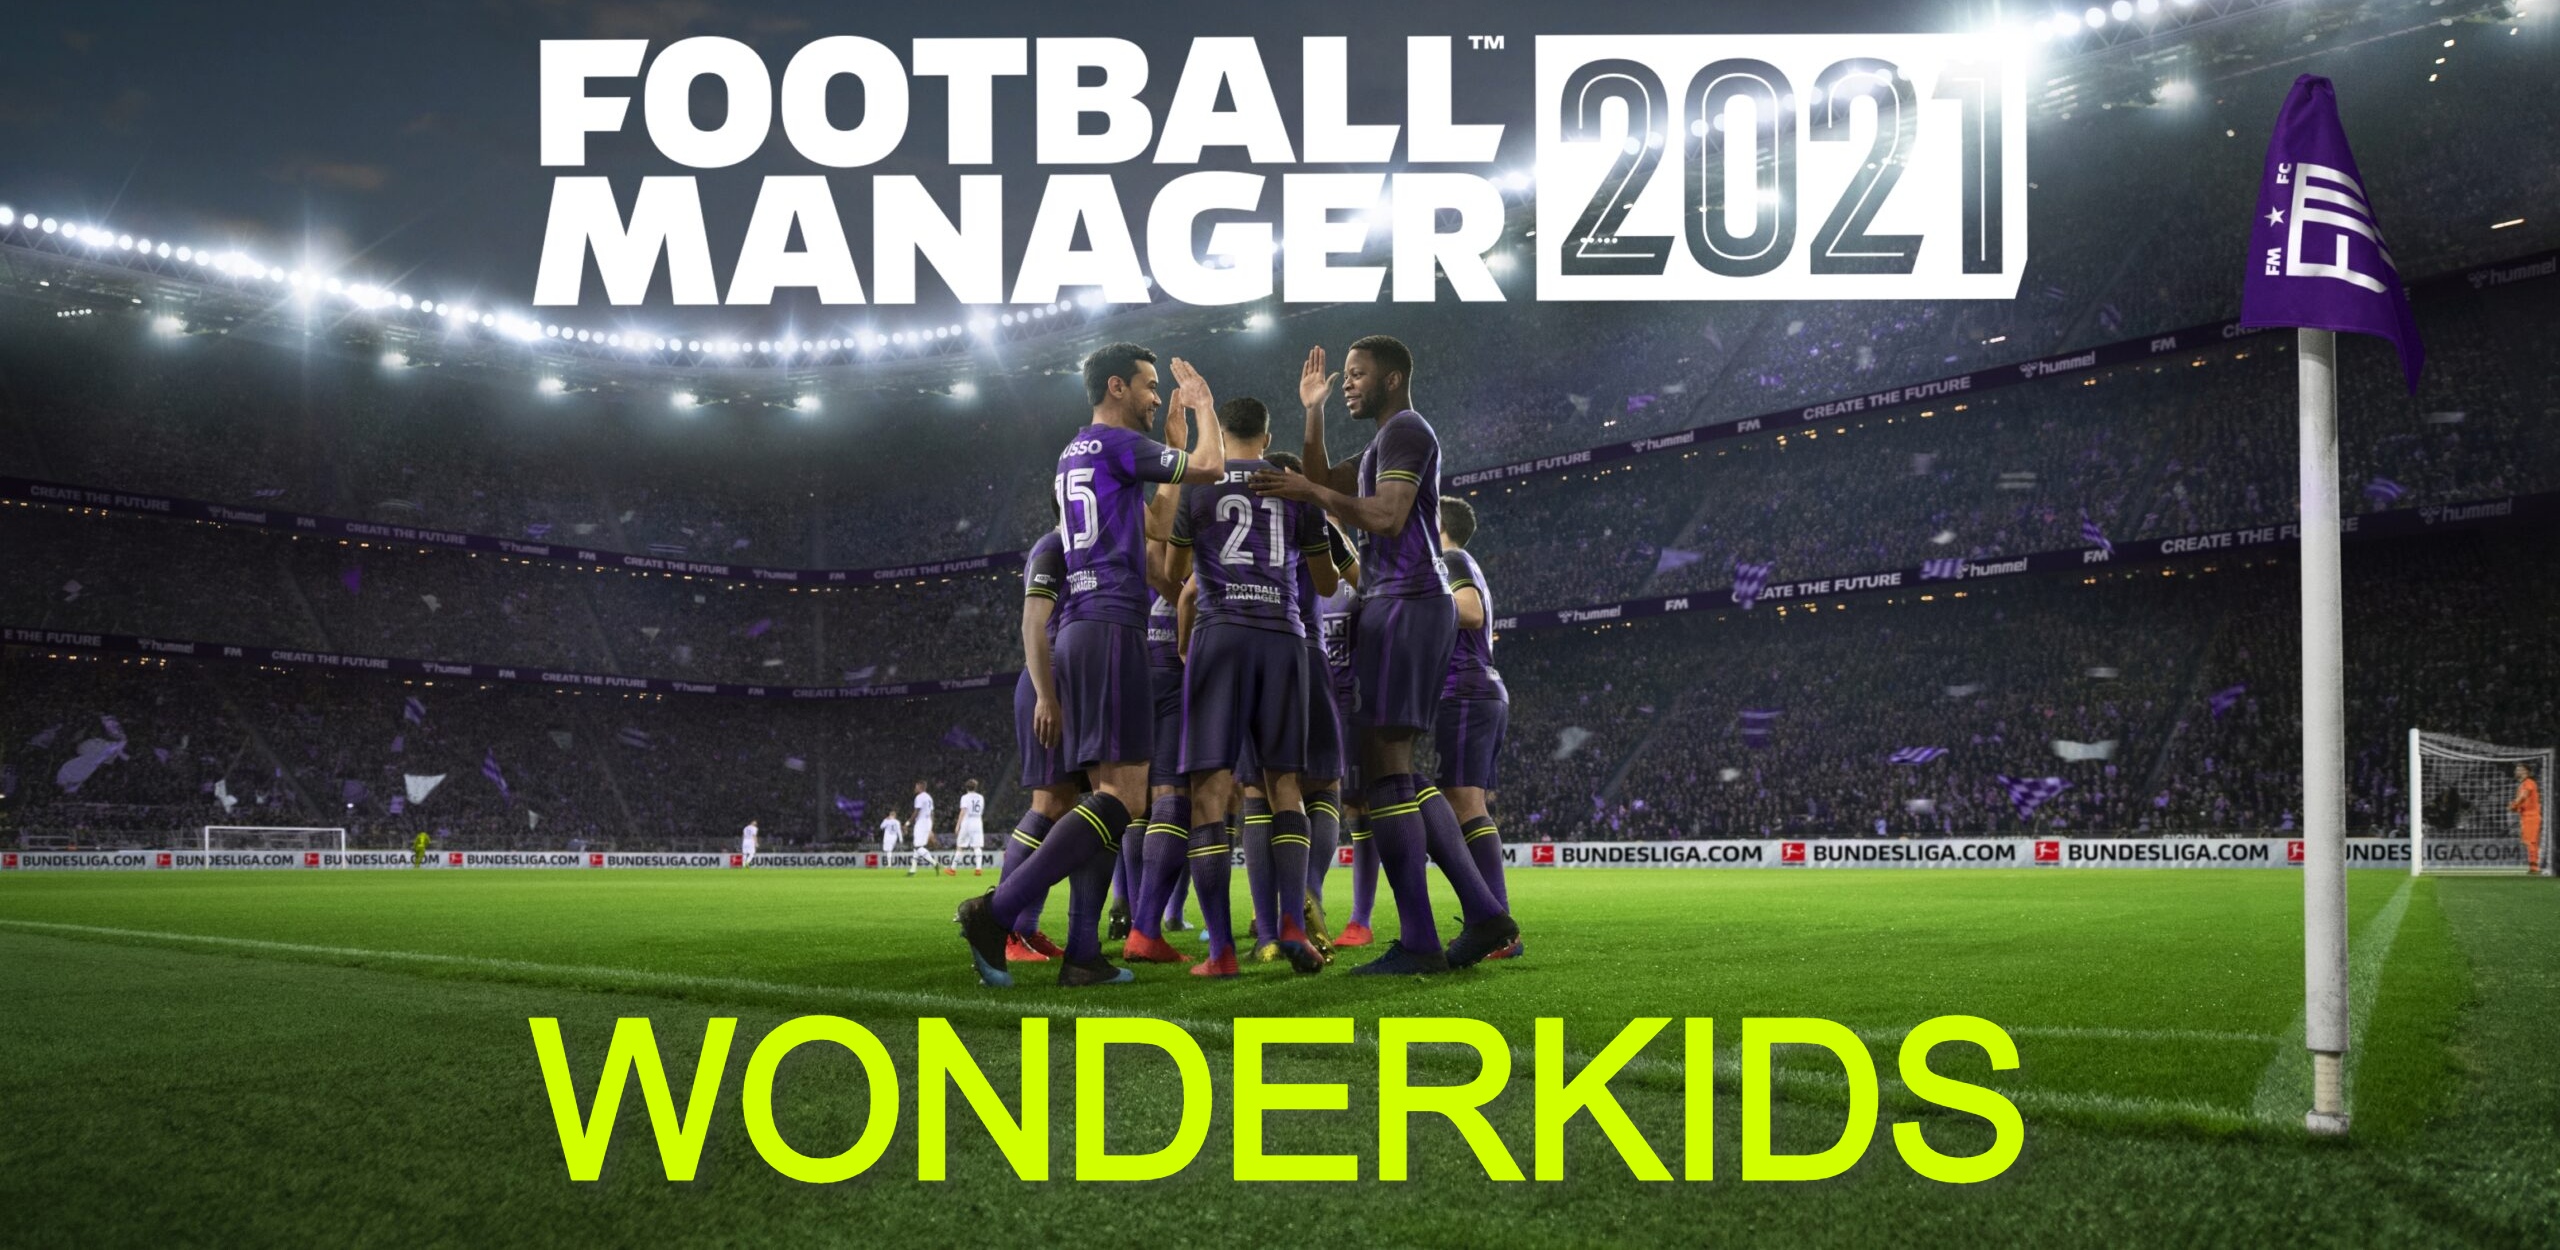 football manager 2021 wonderkids